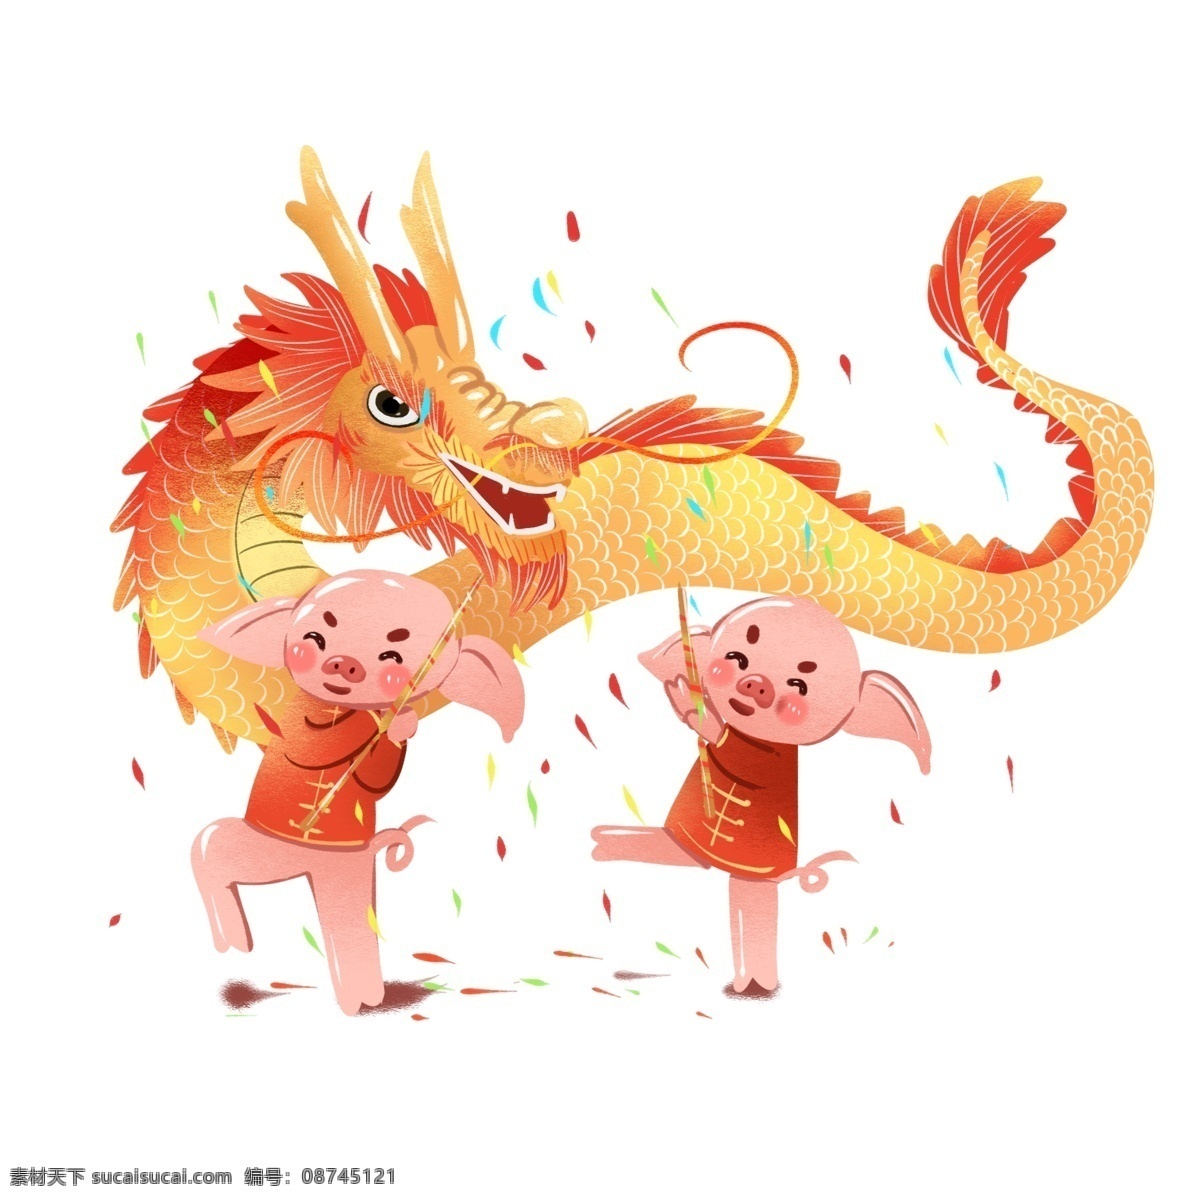 2019 春节 猪年 插画 舞龙 元素 商用 喜庆 新年 生肖 猪